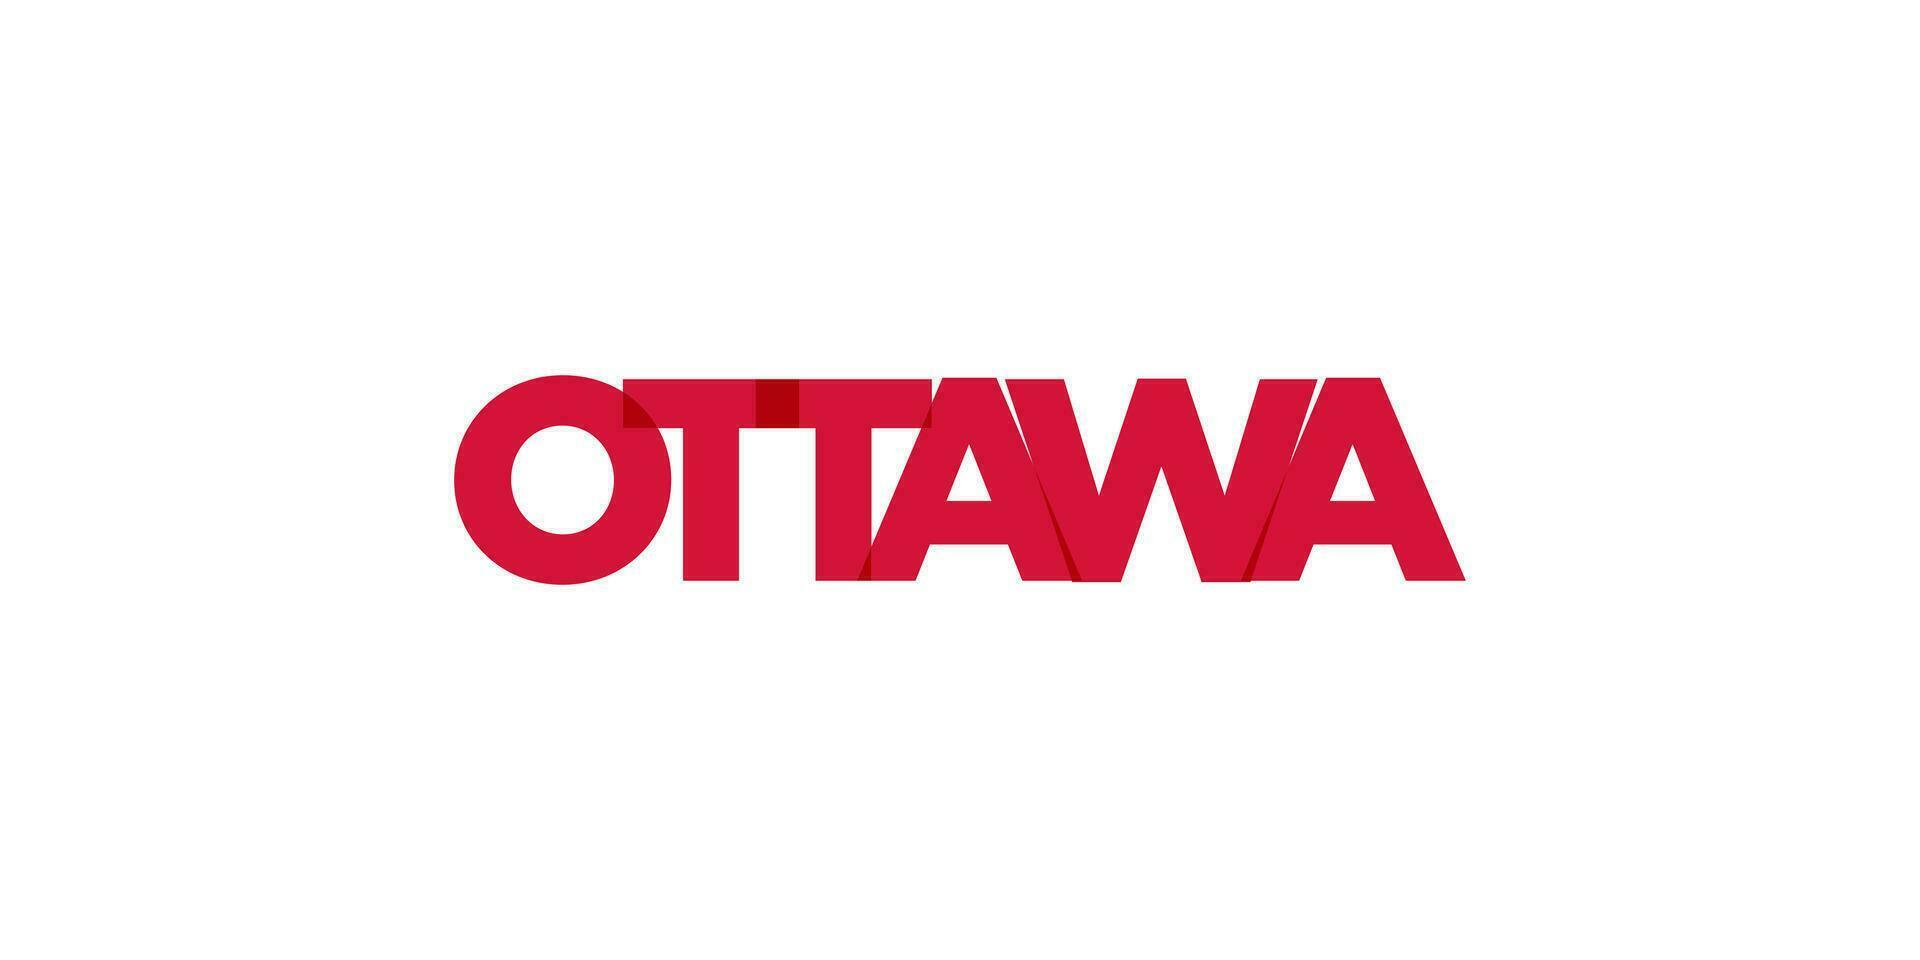 ottawa dans le Canada emblème. le conception Caractéristiques une géométrique style, vecteur illustration avec audacieux typographie dans une moderne Police de caractère. le graphique slogan caractères.